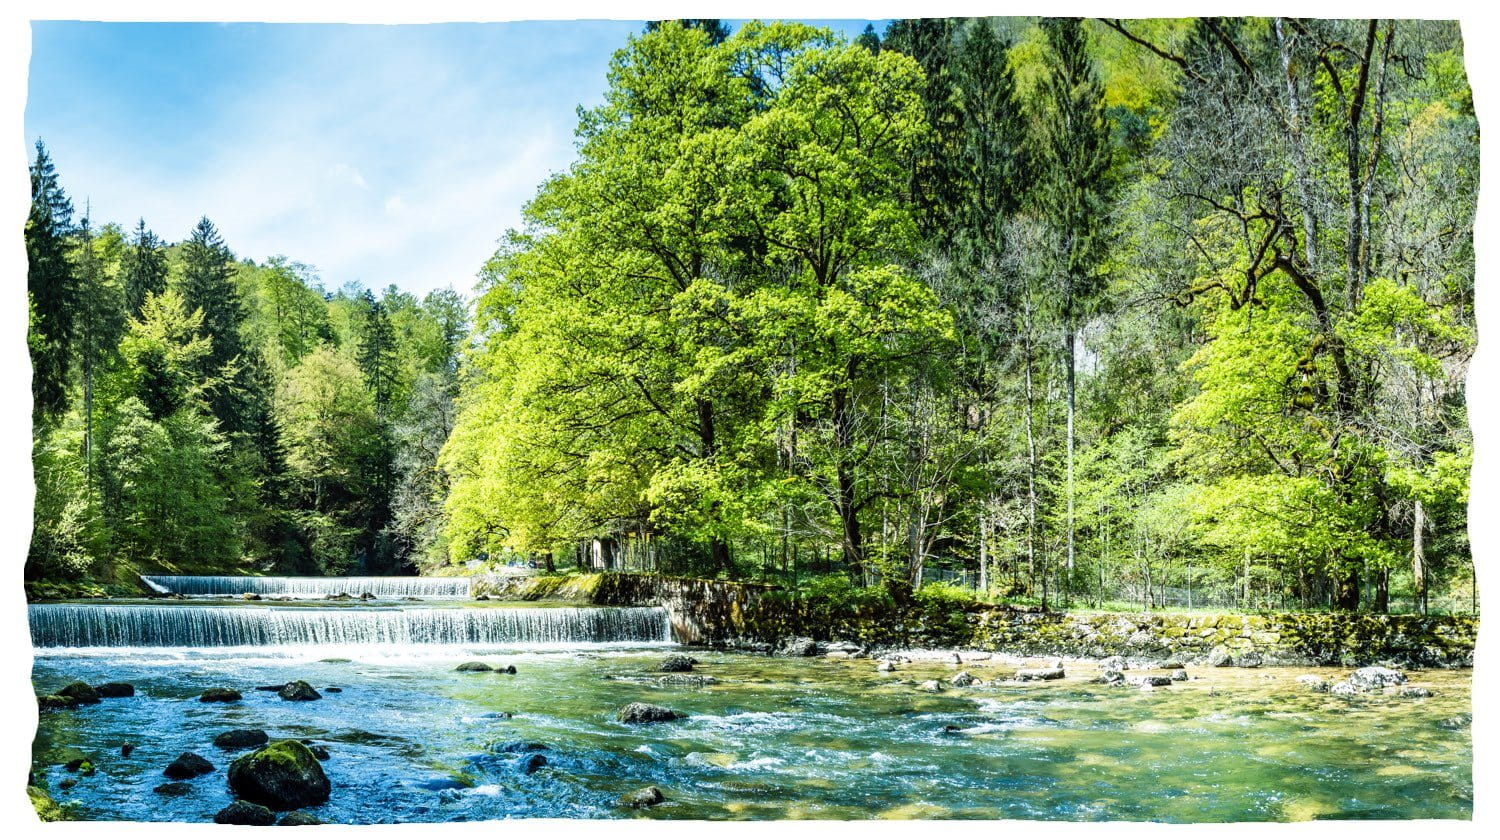 Een schone rivier met een kleine waterval die door een bos stroomt